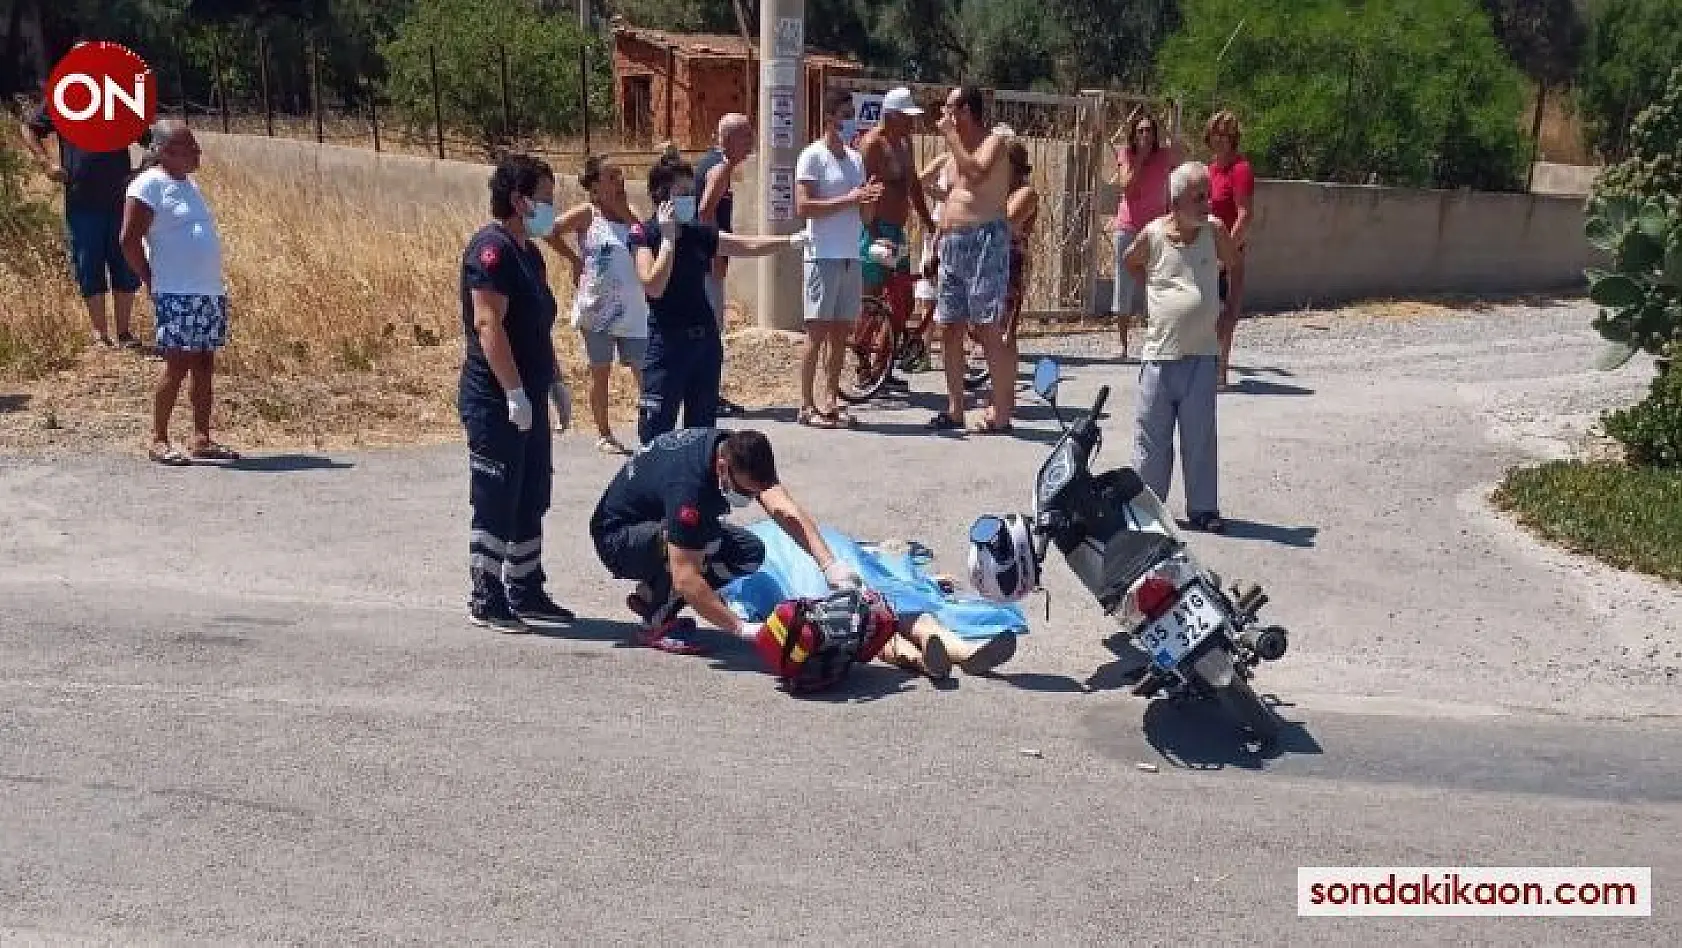 İzmir'de kadın cinayeti: Motosikletiyle seyir halindeyken öldürüldü